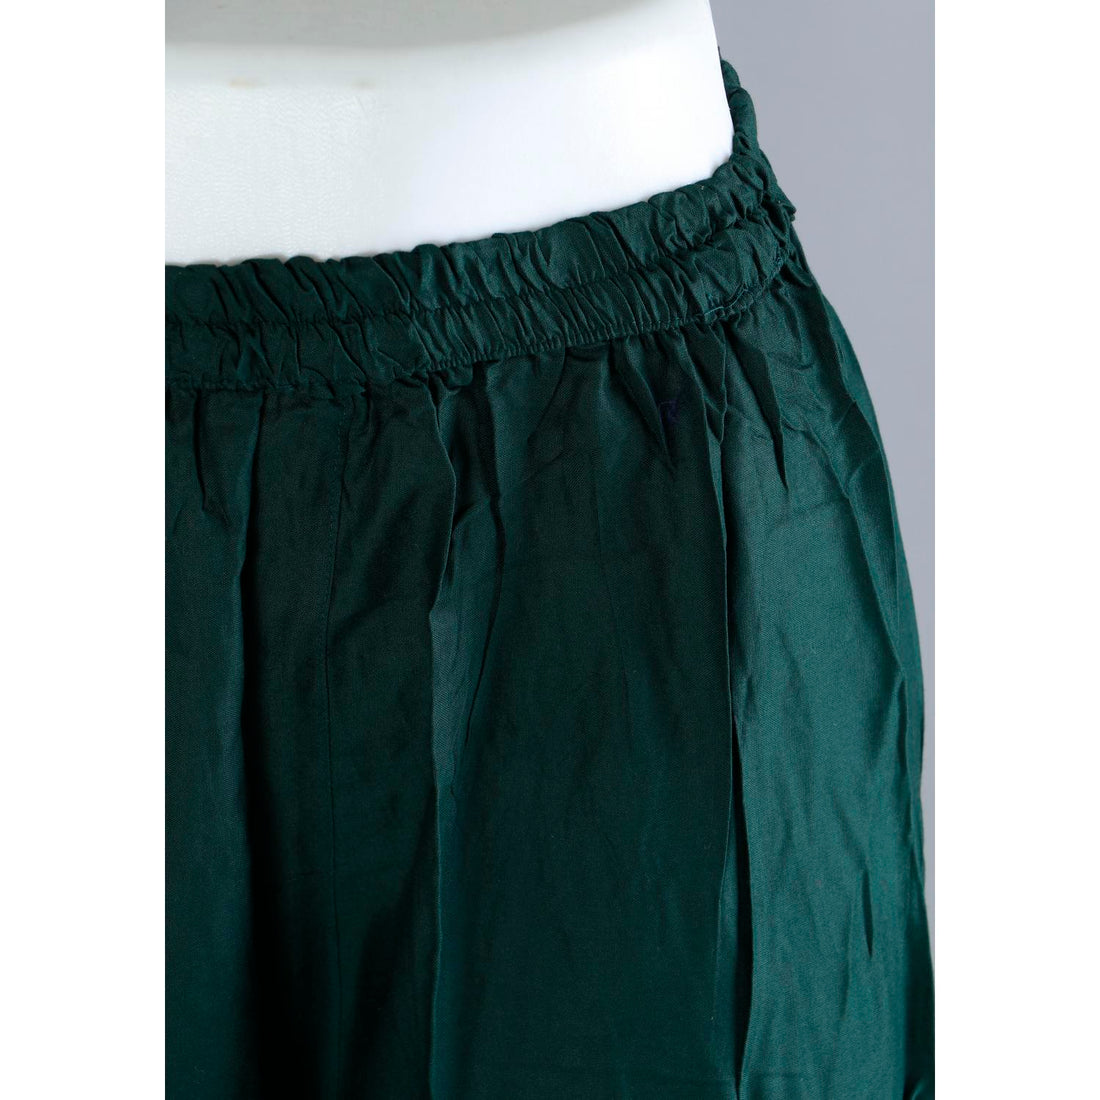 Green Colour Sharara Pants